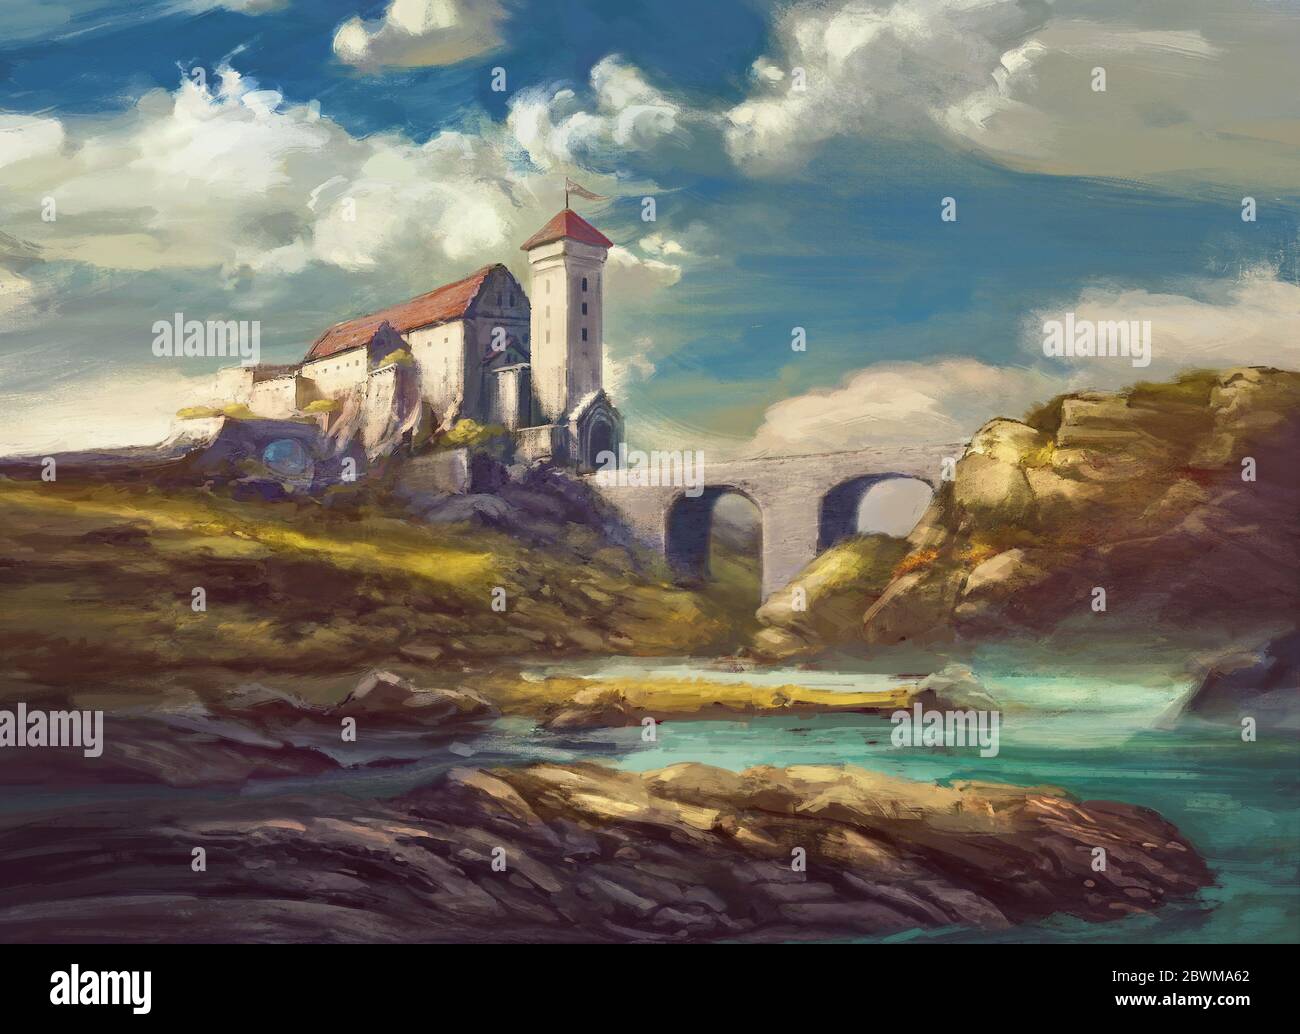 paysage avec château médiéval sur la falaise, pont en pierre sur la rivière, rochers, ciel magnifique avec des nuages blancs - scène de peinture fantaisie, château fictif Banque D'Images